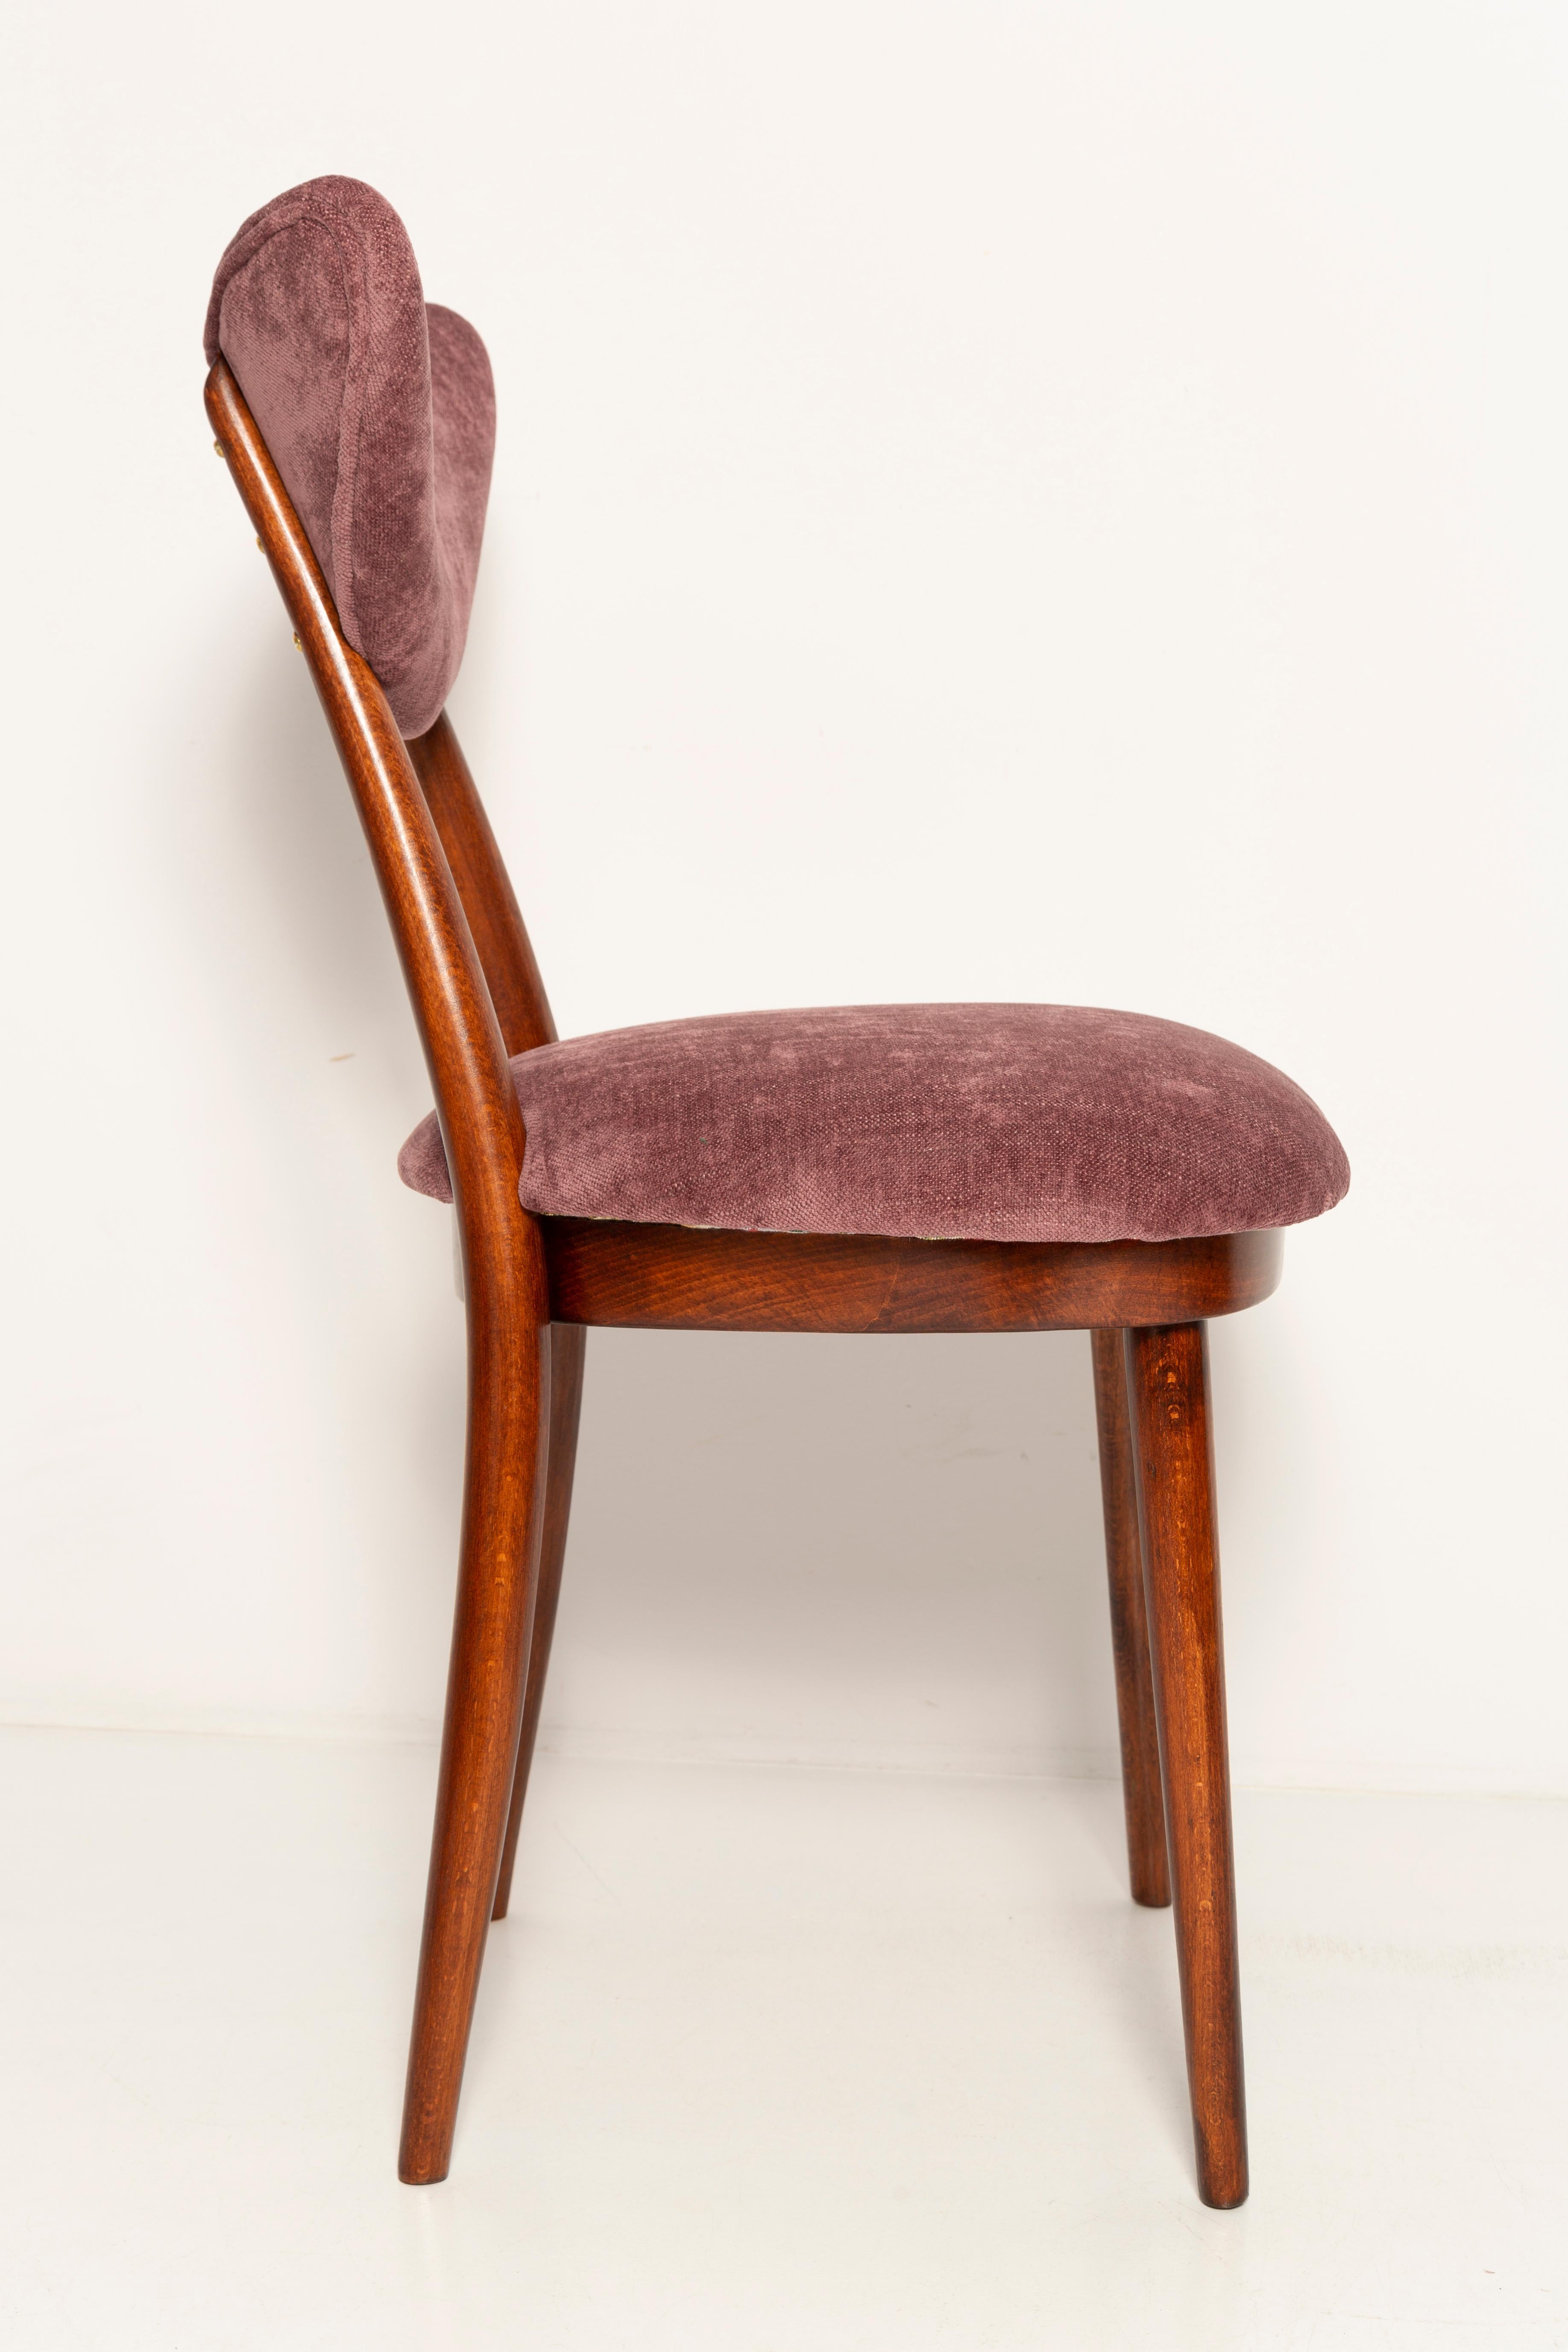 Midcentury Burgundy Pink Violet Velvet Heart Chair, Europe, 1960s For Sale 1